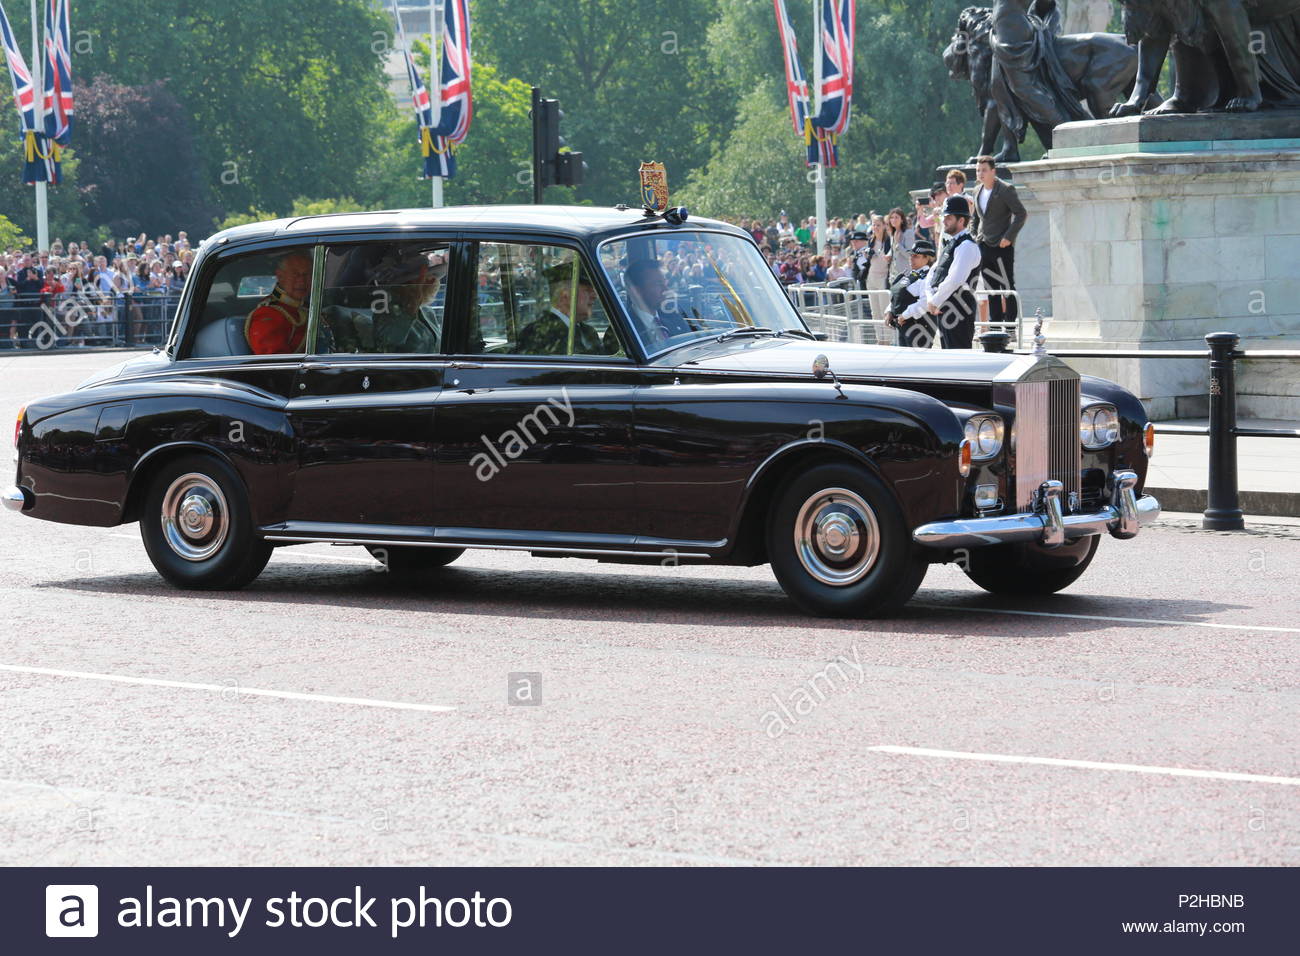 La parade annuelle de la couleur a eu lieu à Londres en l'honneur de l'anniversaire de la reine Elizabeth. Les rues bordées de milliers d'accueillir Sa Majesté. Banque D'Images